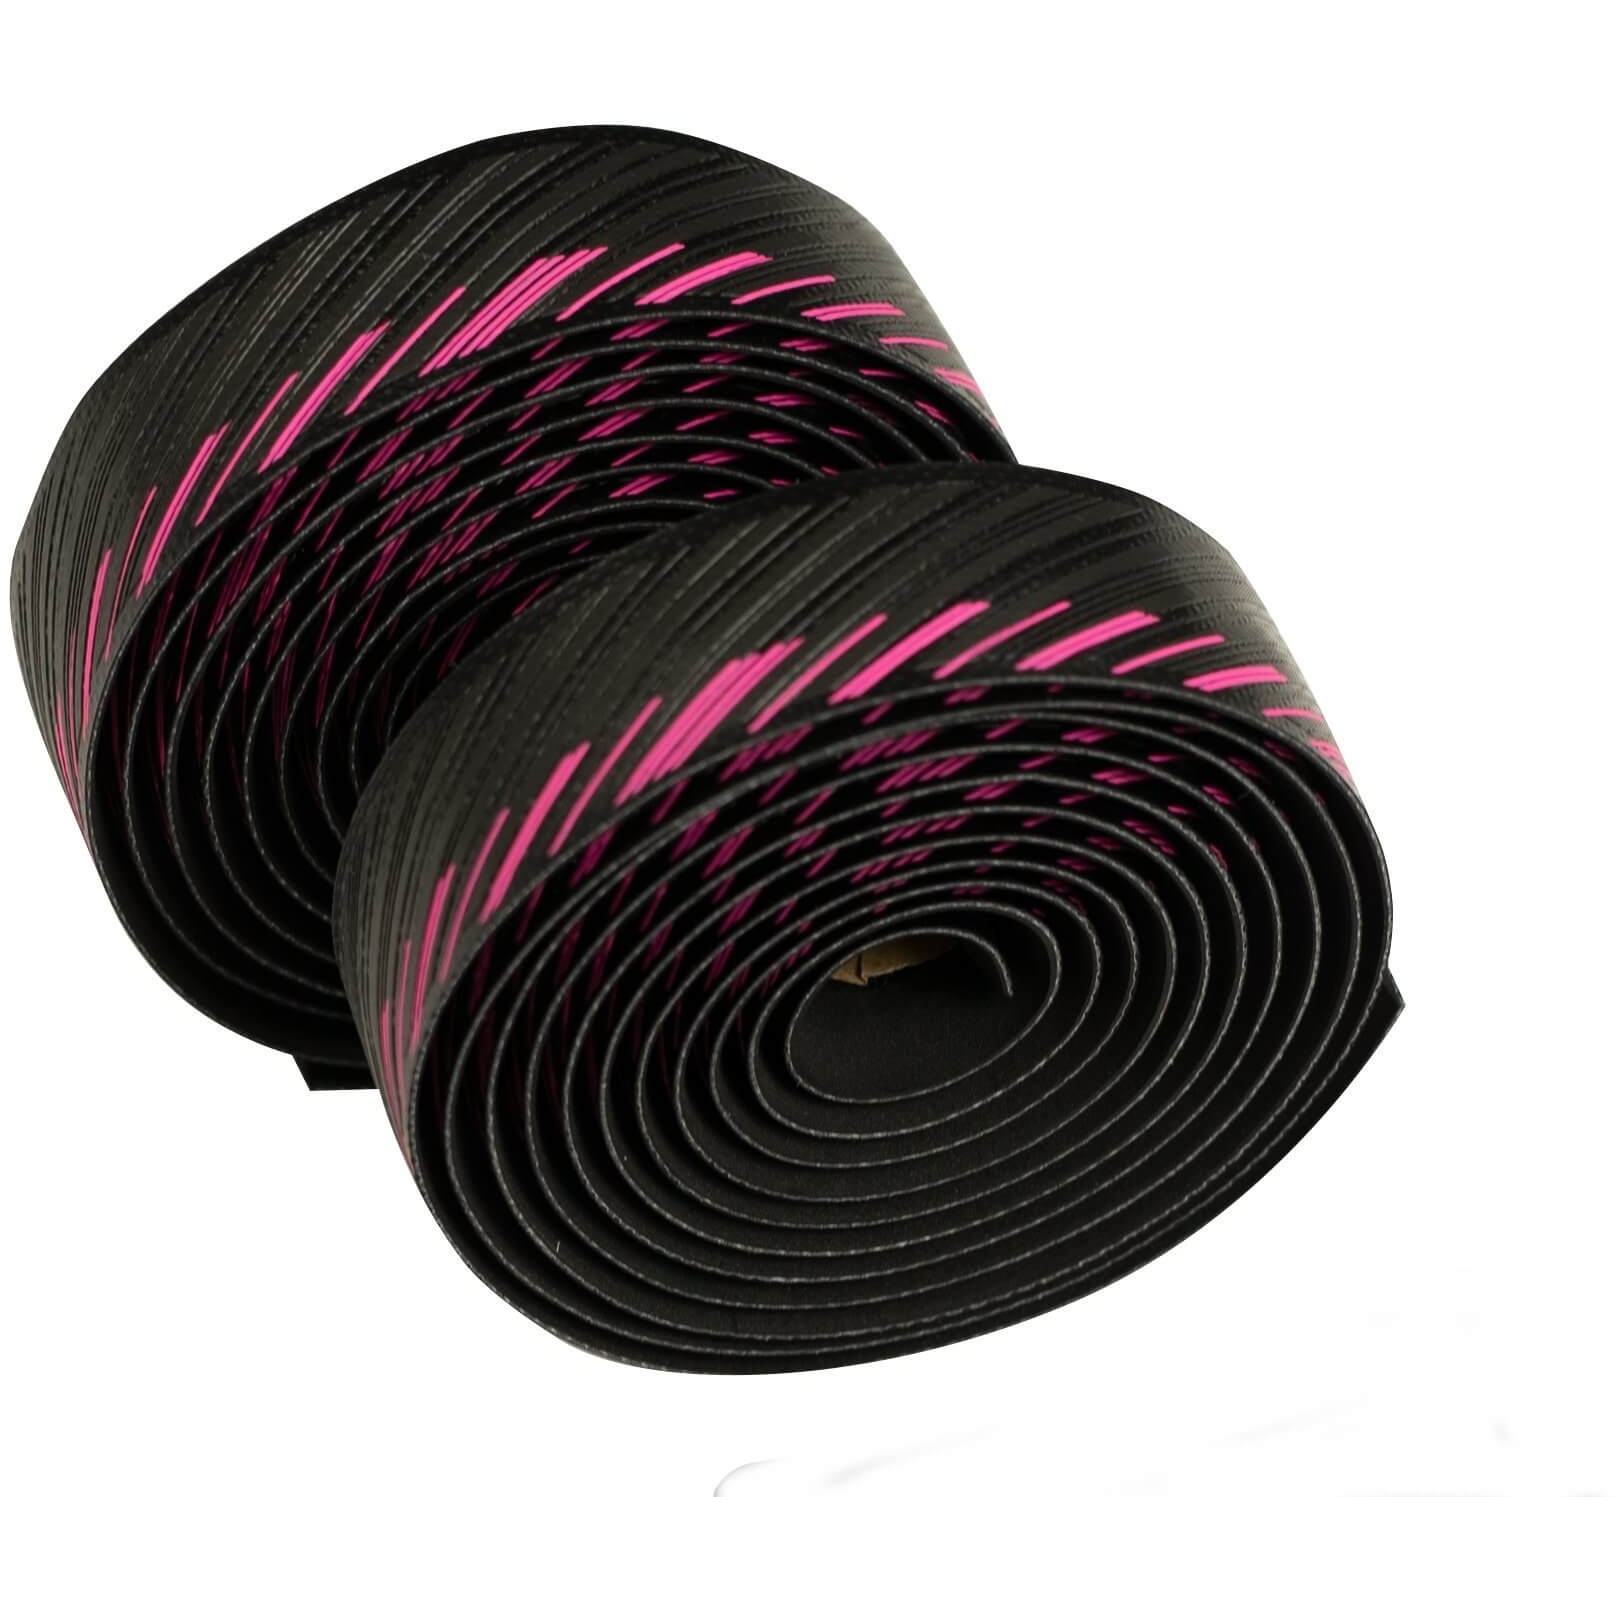 Produktbild von SILCA Nastro Cuscino Lenkerband - Black Hot Pink